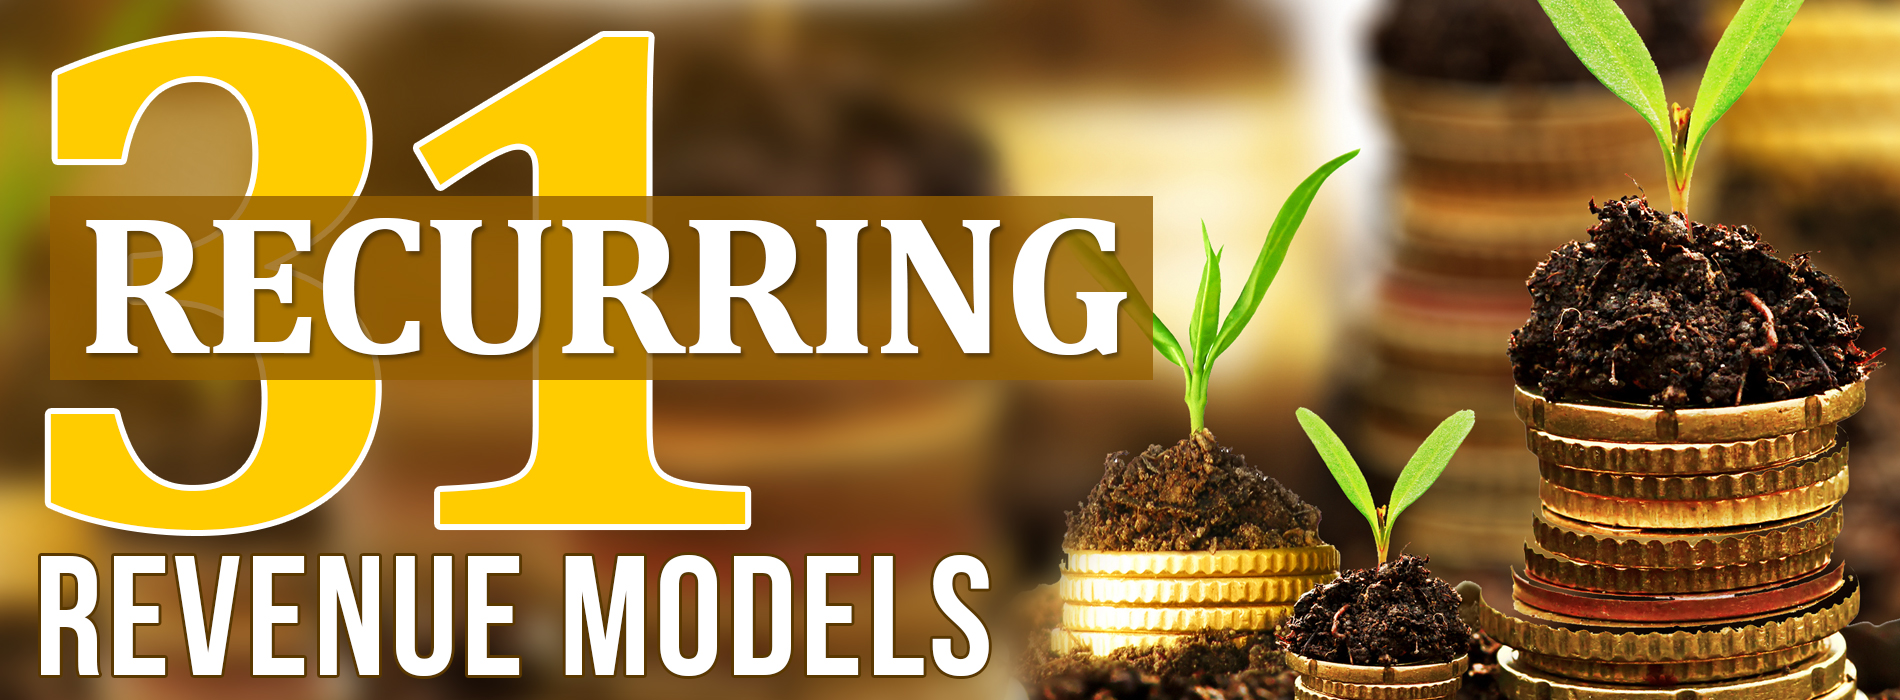 31-recurring-revenue-models